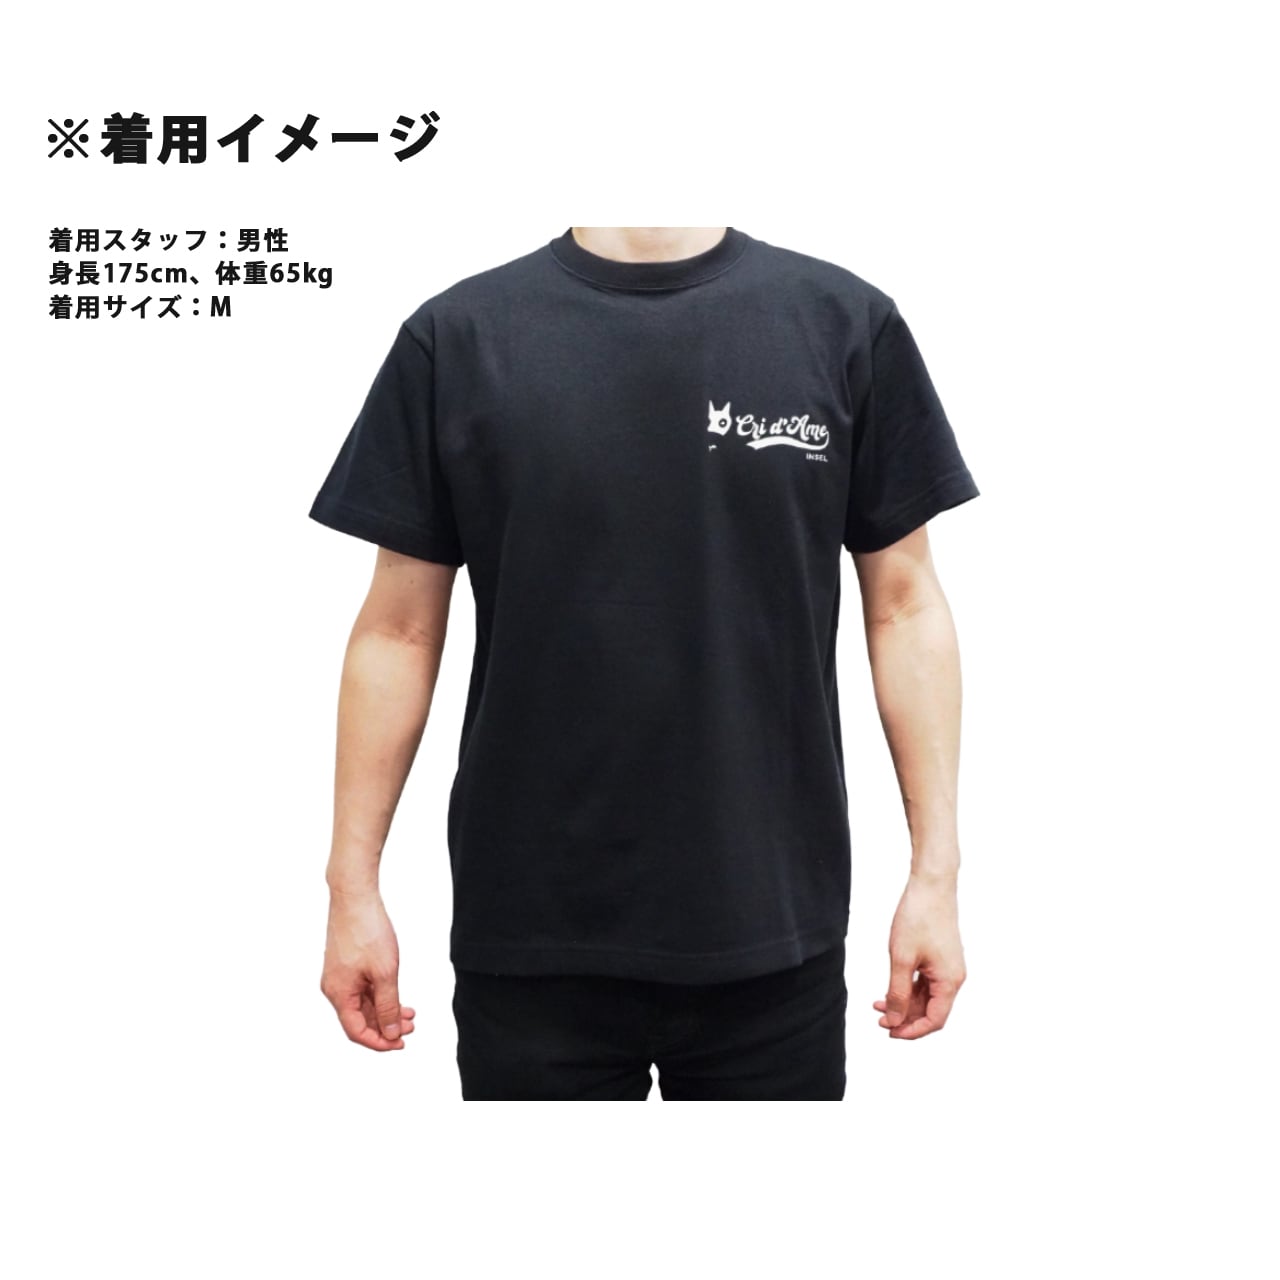 【人気☆MANCHESTER UNITED 香川真司 26】黒Tシャツ サイズM